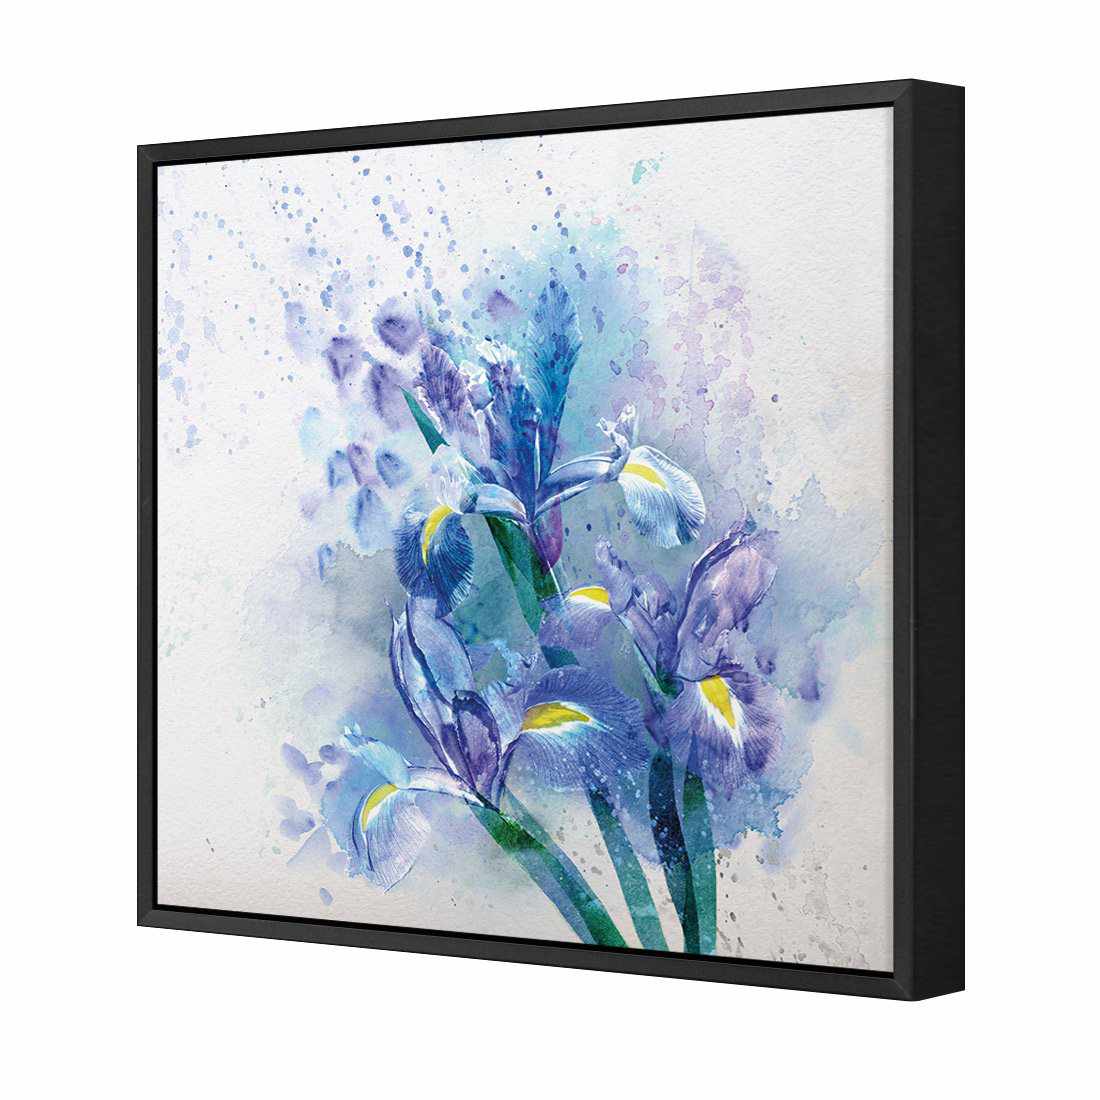 Iris Rain Canvas Art-Canvas-Wall Art Designs-30x30cm-Canvas - Black Frame-Wall Art Designs